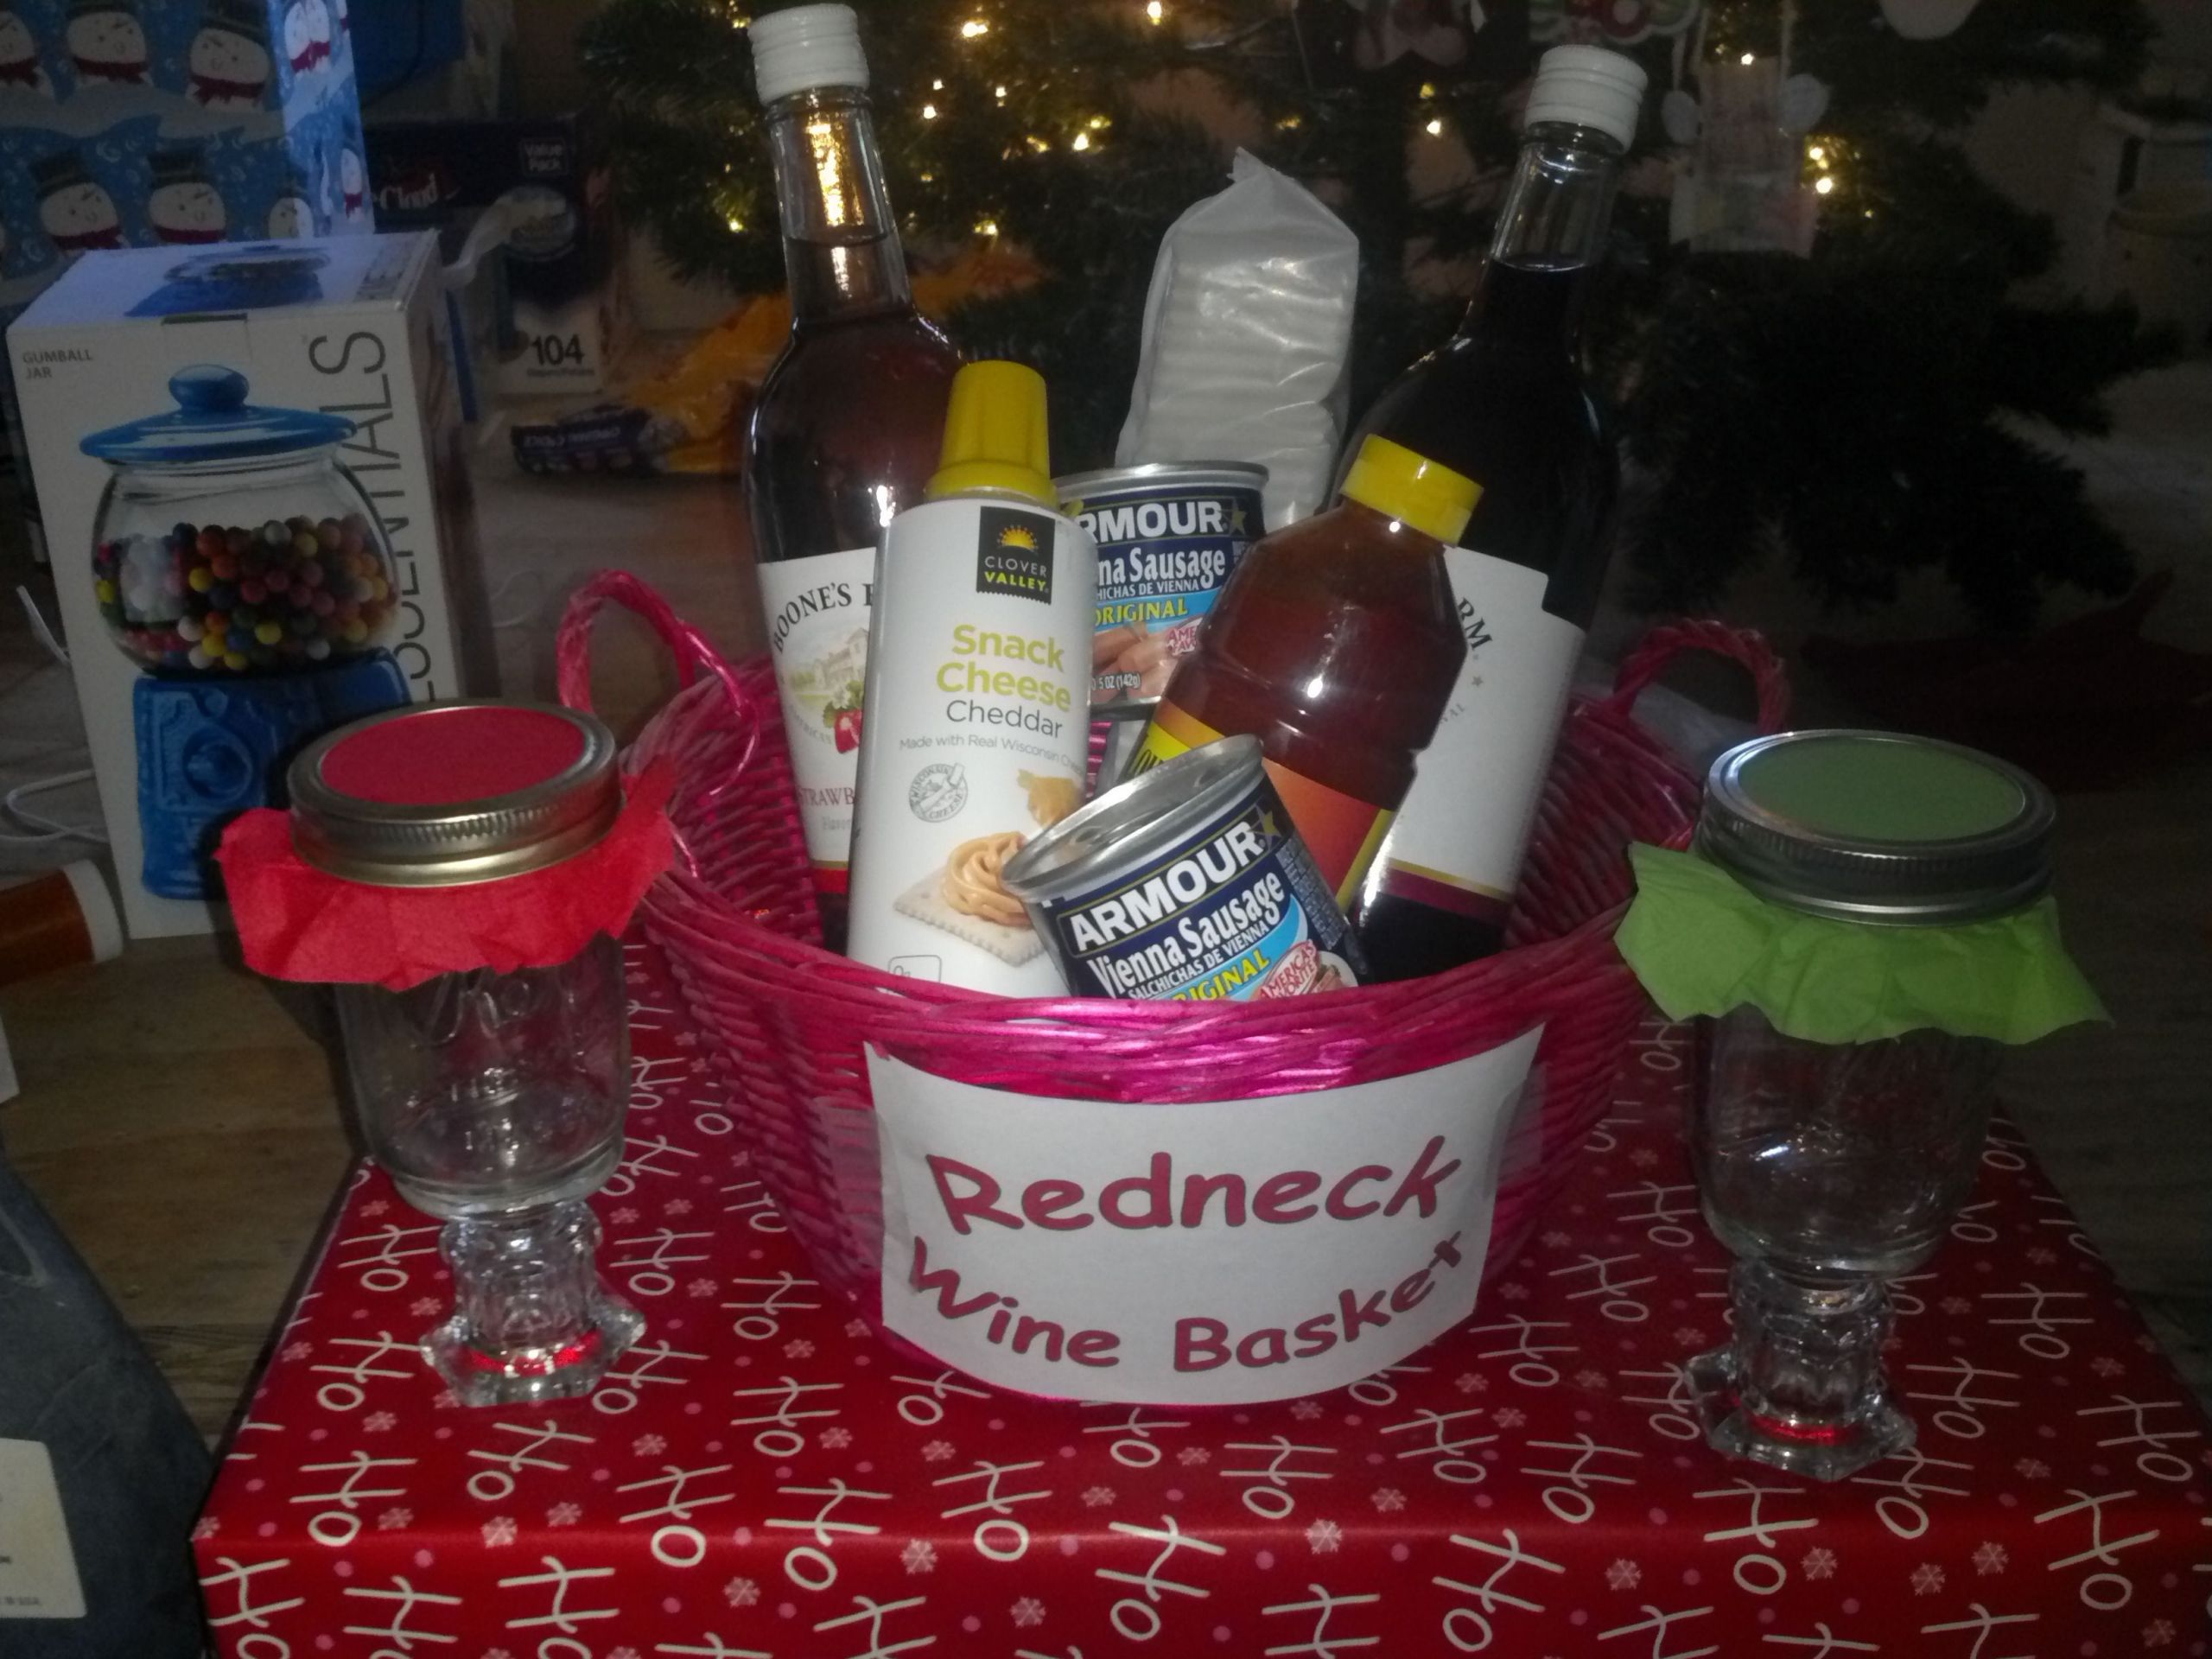 Redneck Wedding Gifts
 Redneck Wine Basket My Stuff Pinterest